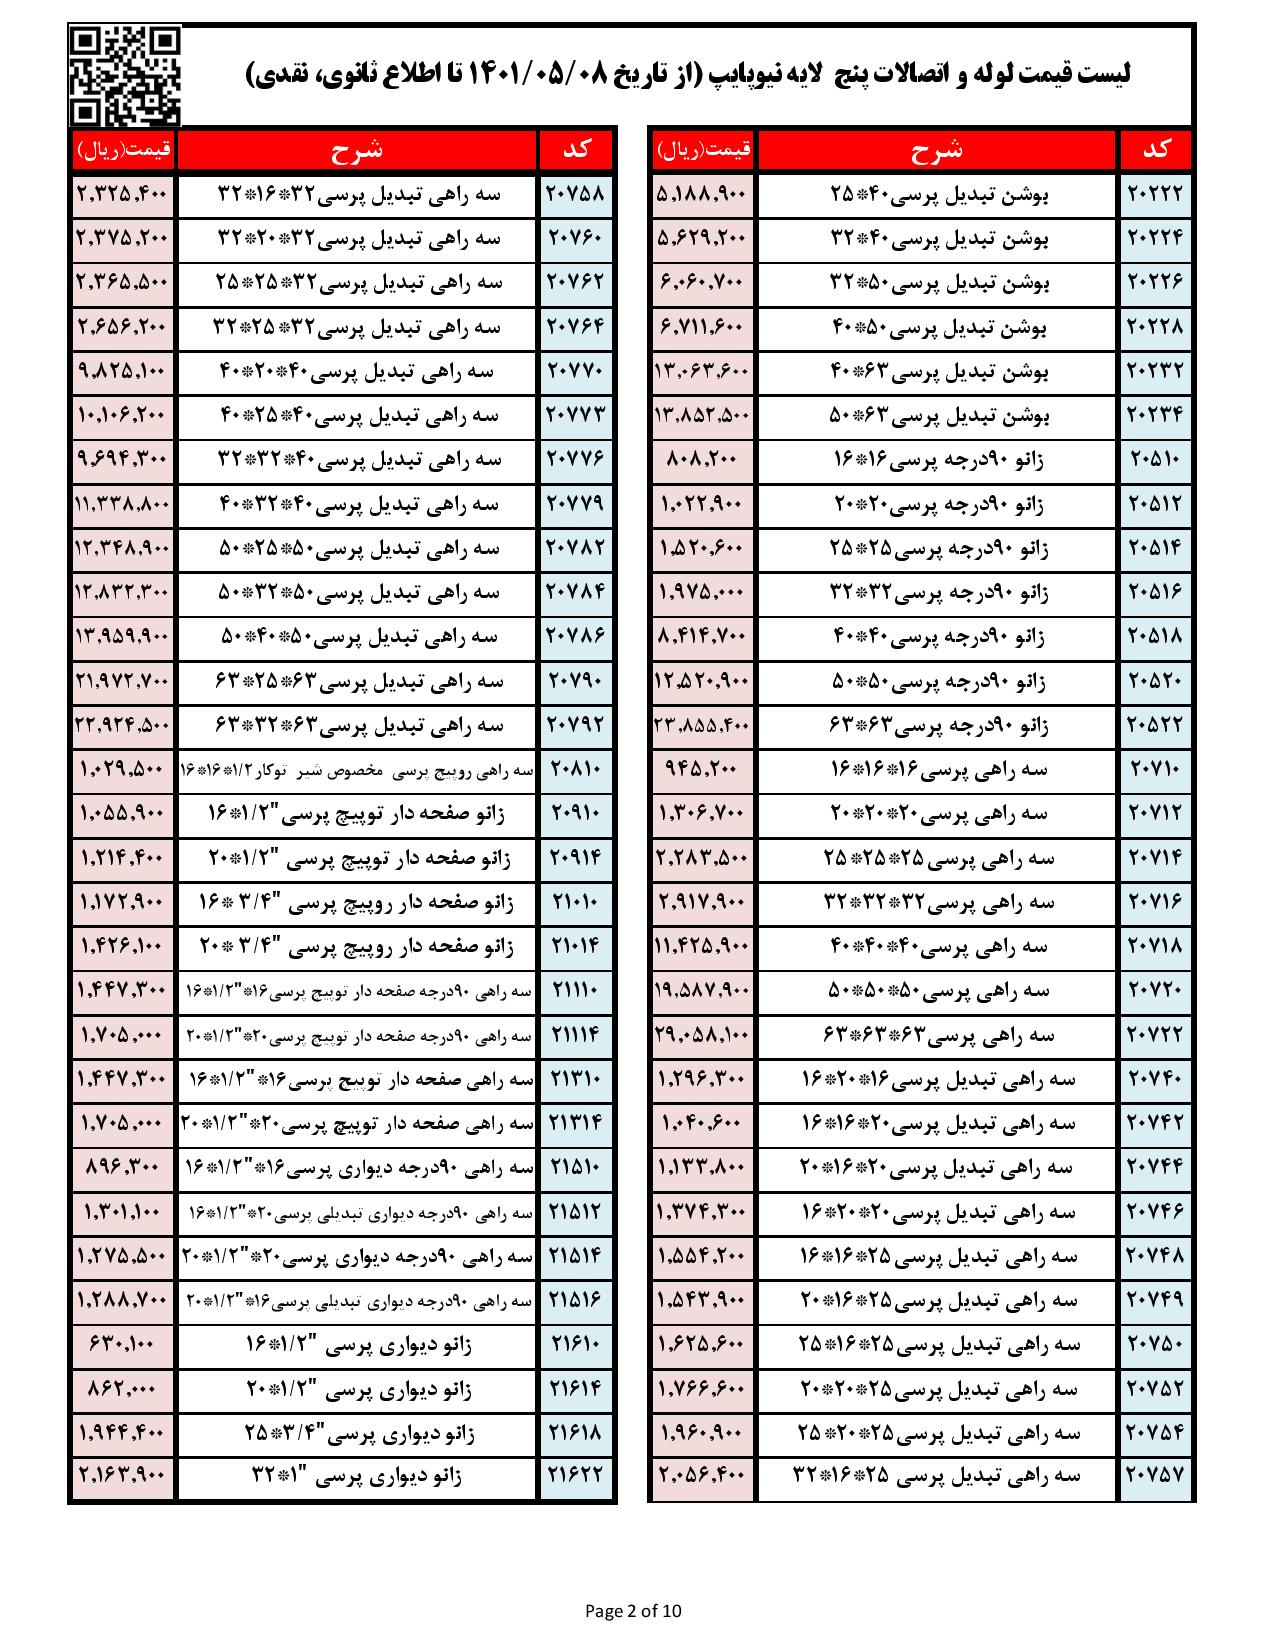 لیست قیمت نیوپایپ بتاریخ 1401/05/08